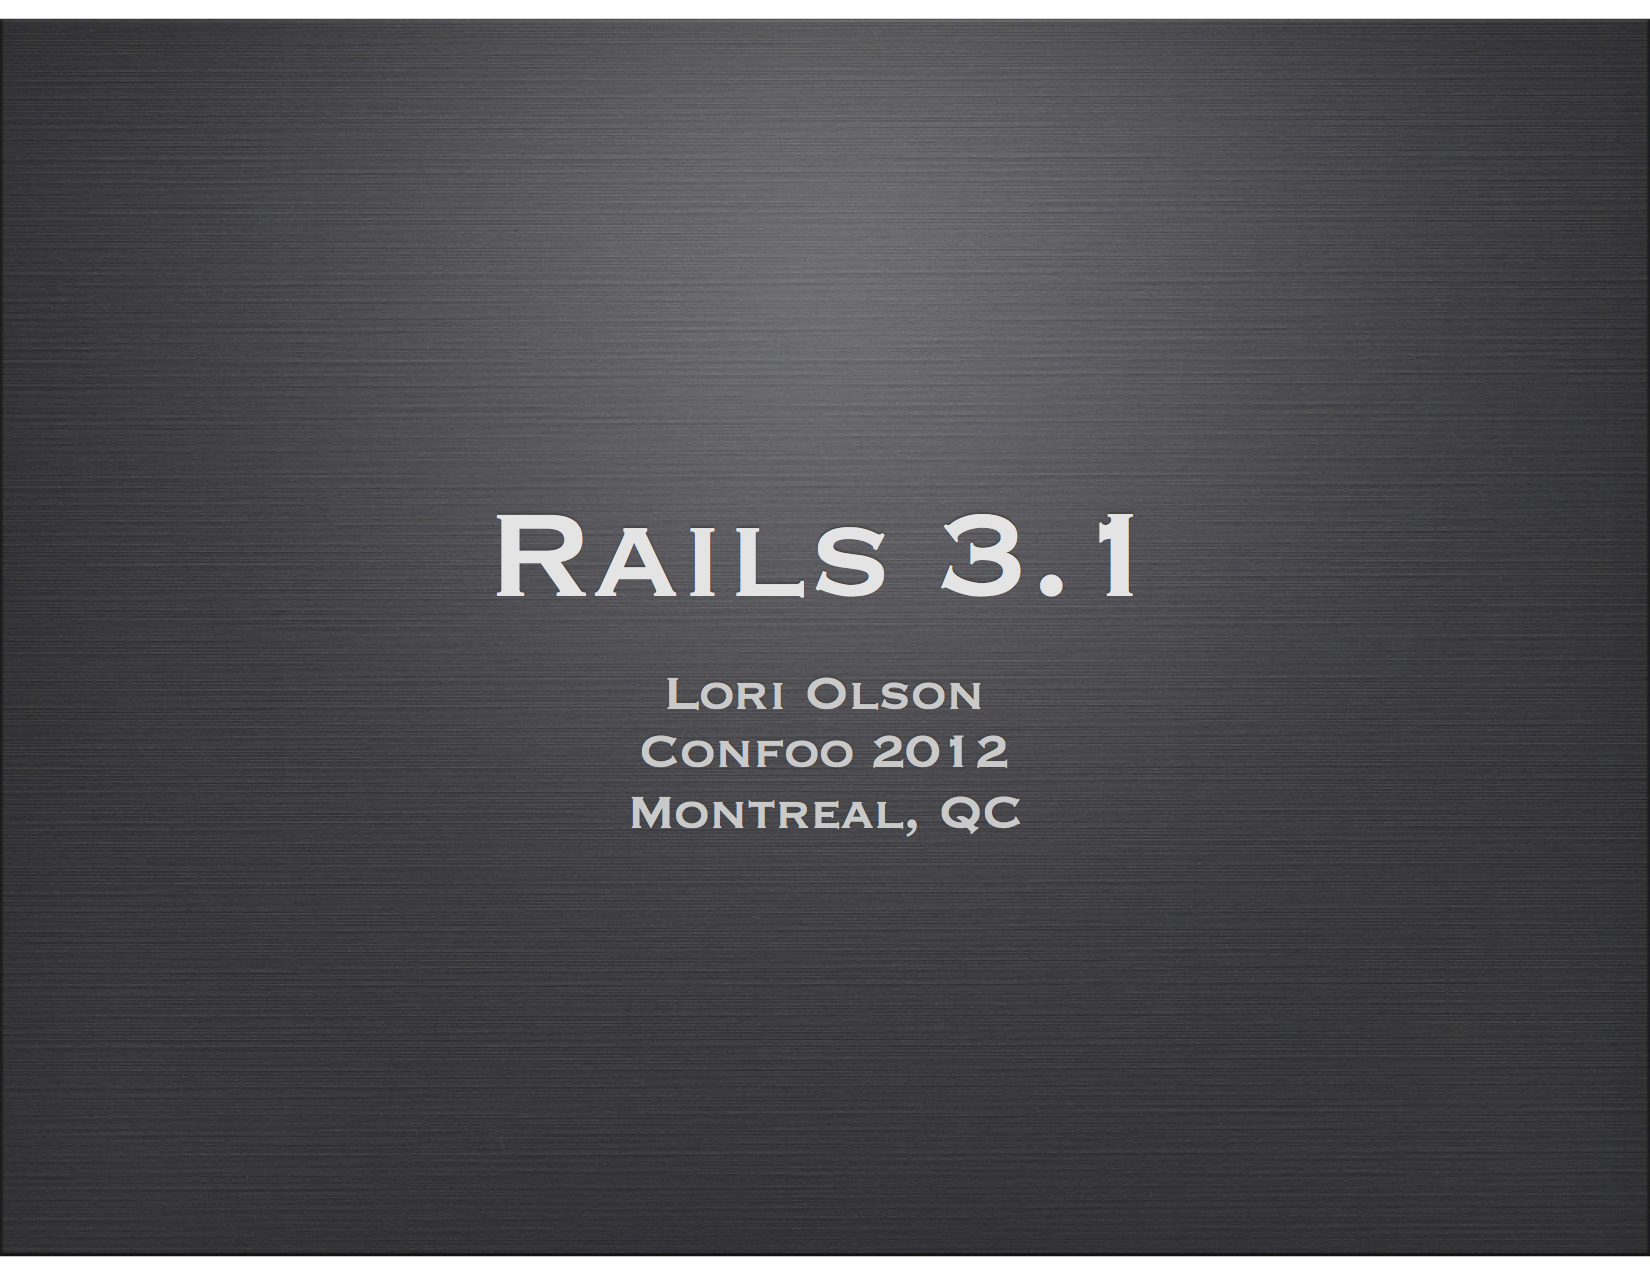 Rails 3.1